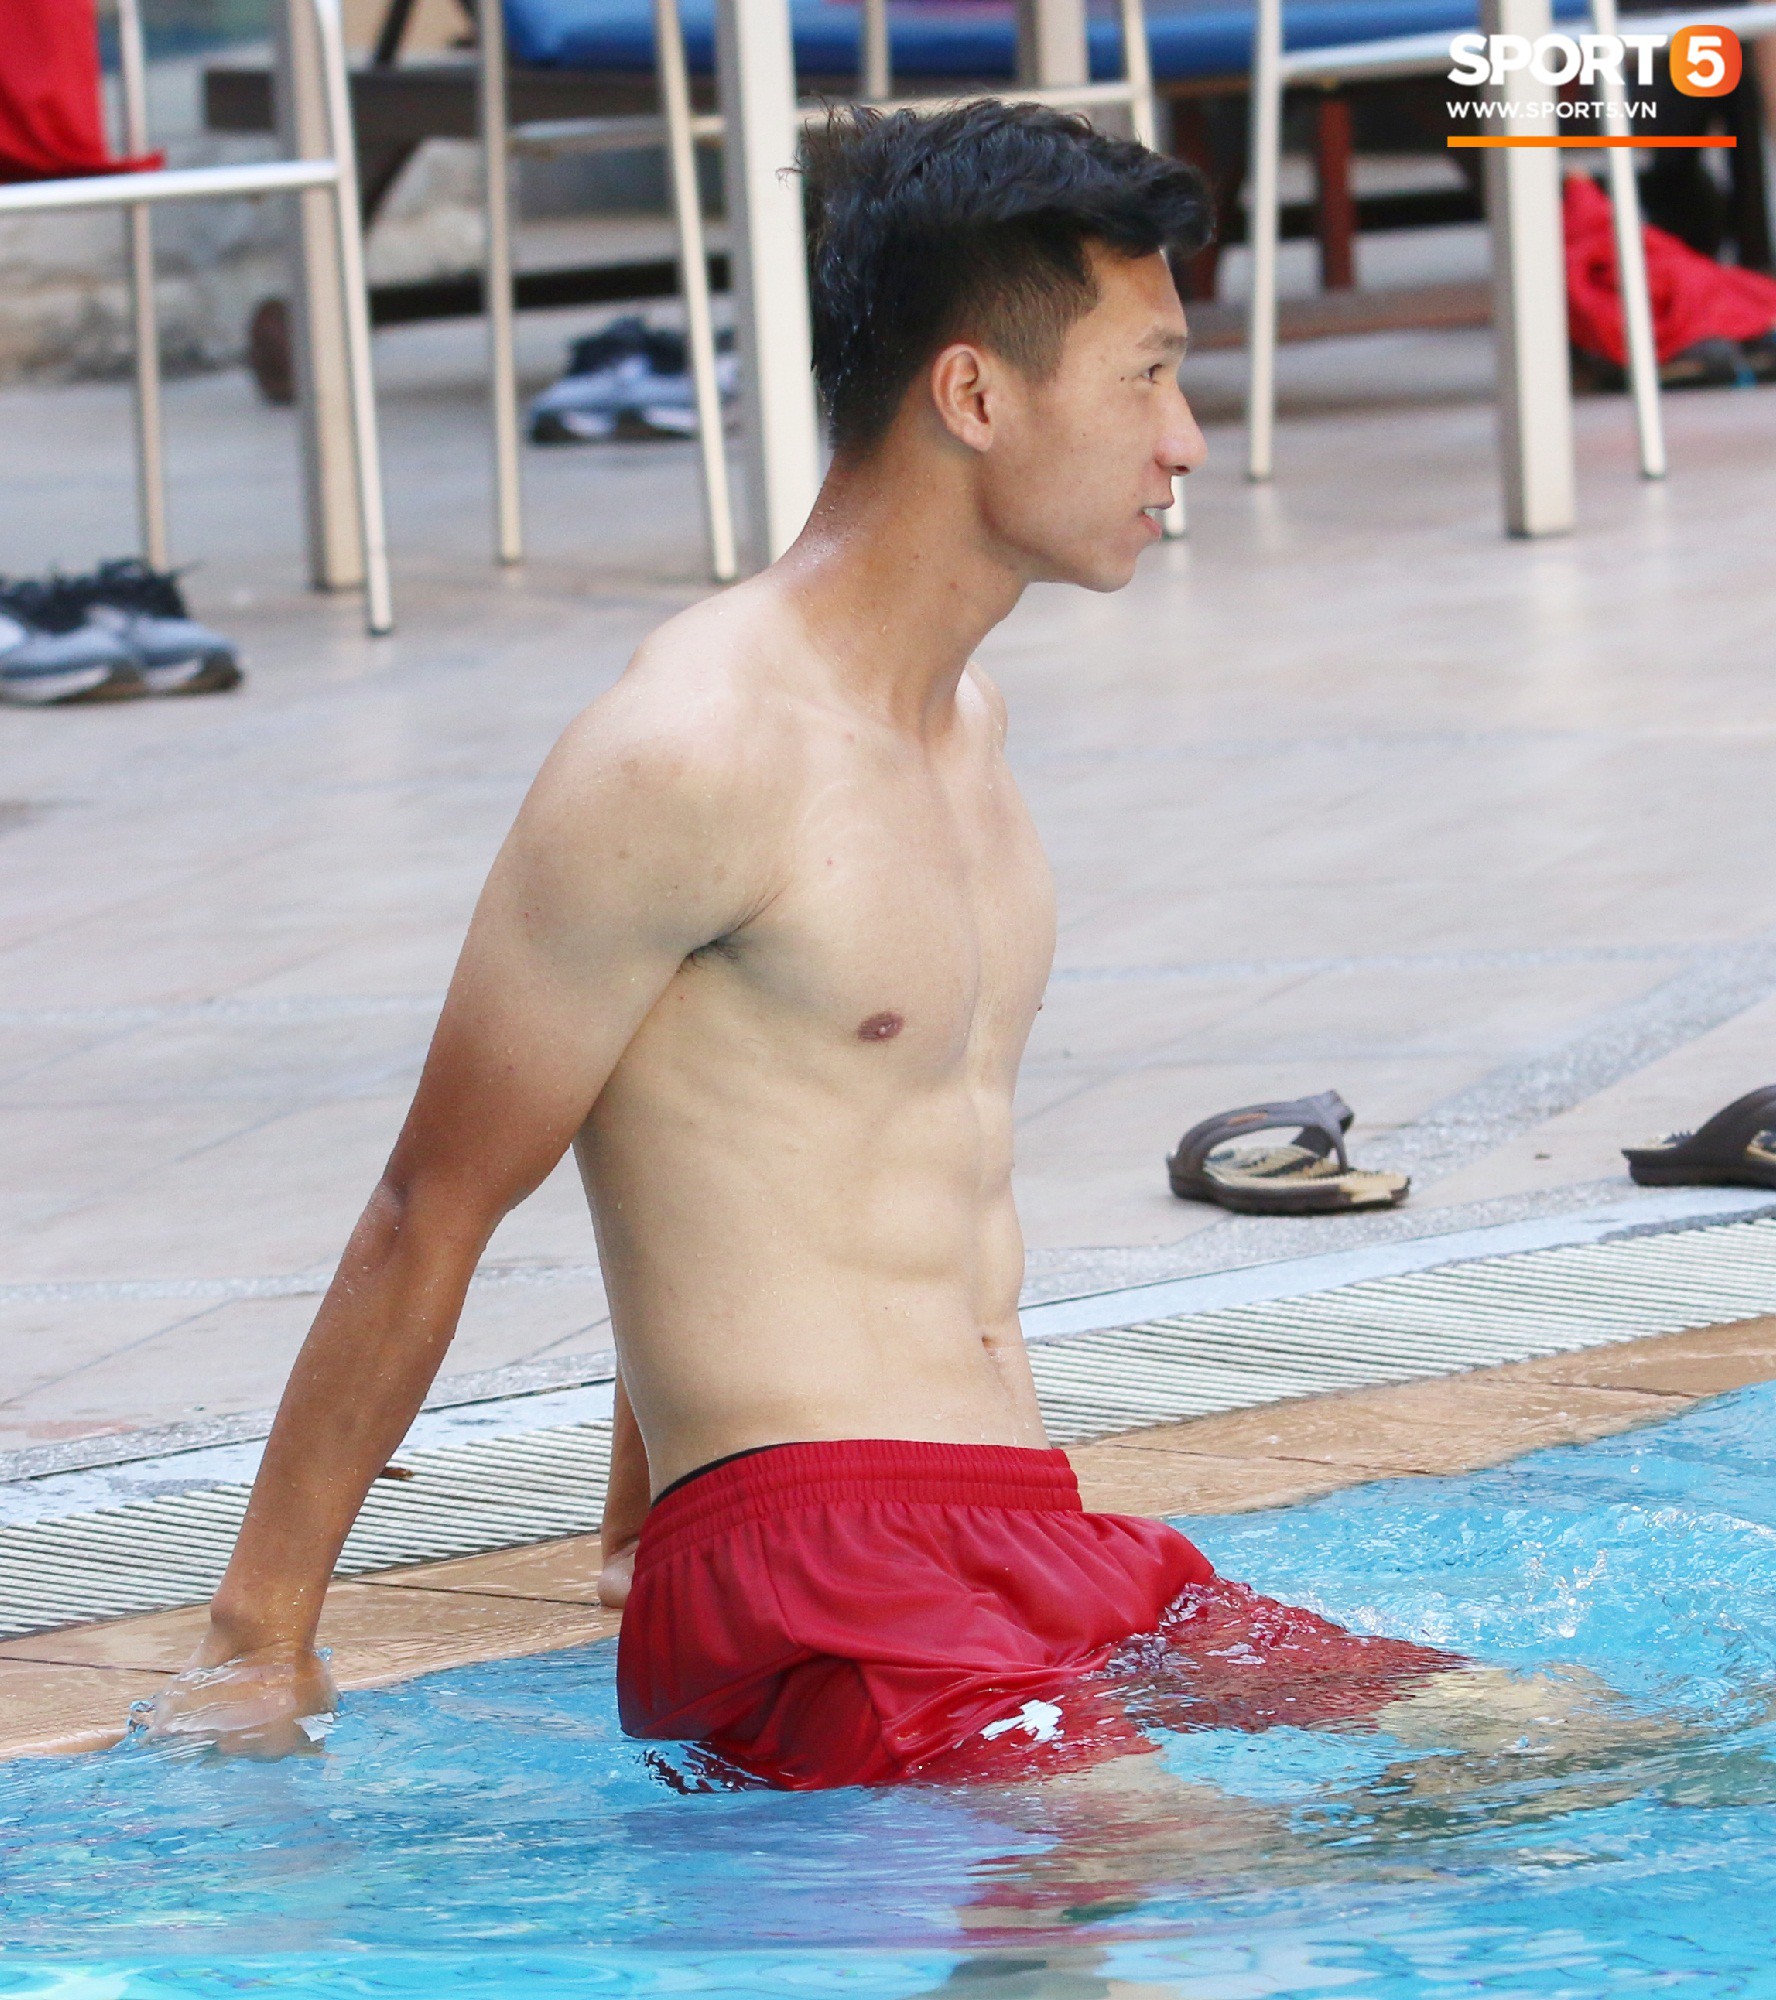 Chẳng kém các đàn anh, U22 Việt Nam cũng có rất nhiều cực phẩm khi vui đùa bên bể bơi-1